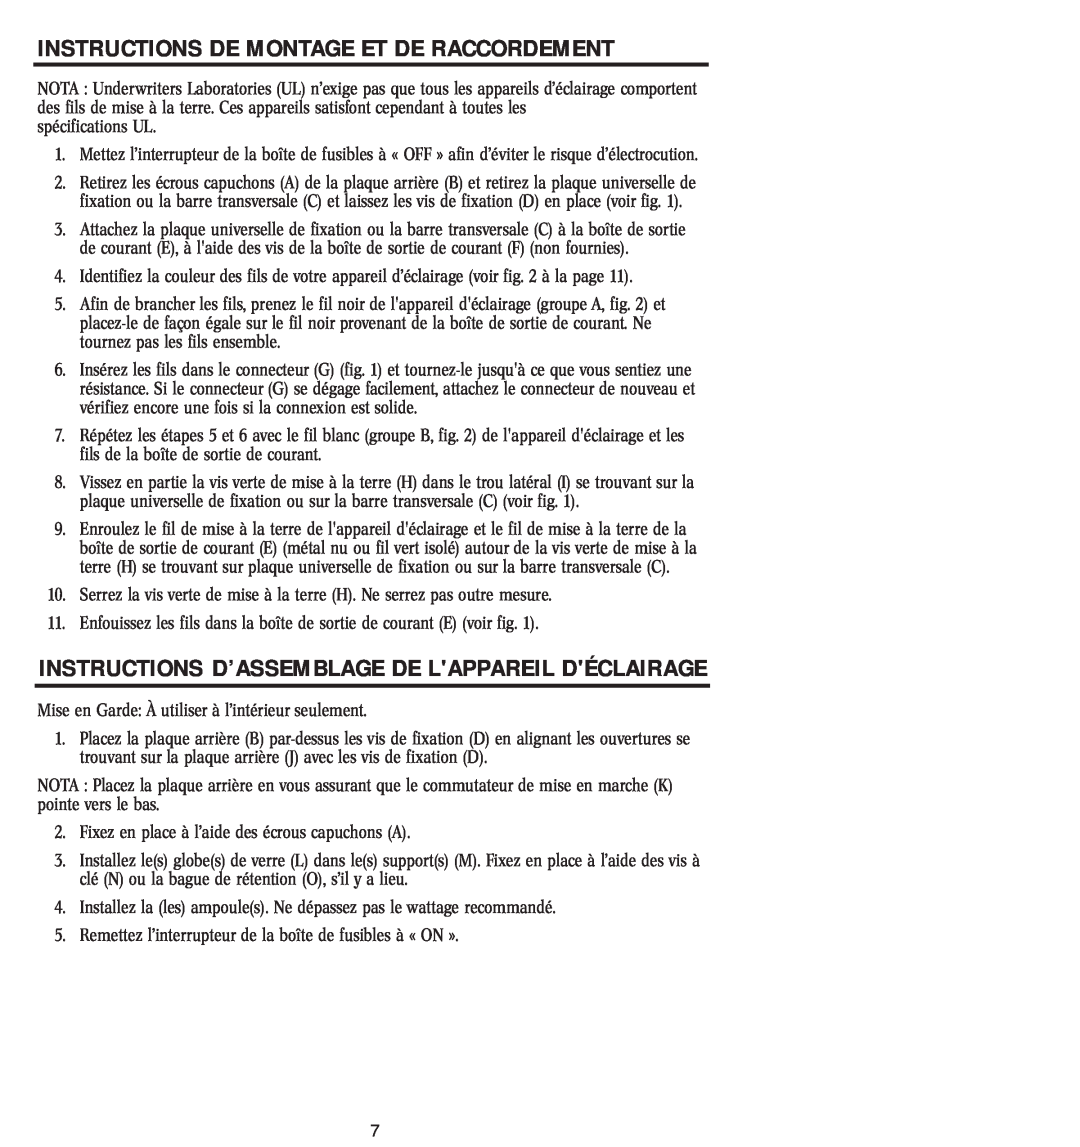 Westinghouse 12804 Instructions D’Assemblage De Lappareil Déclairage, Instructions De Montage Et De Raccordement 